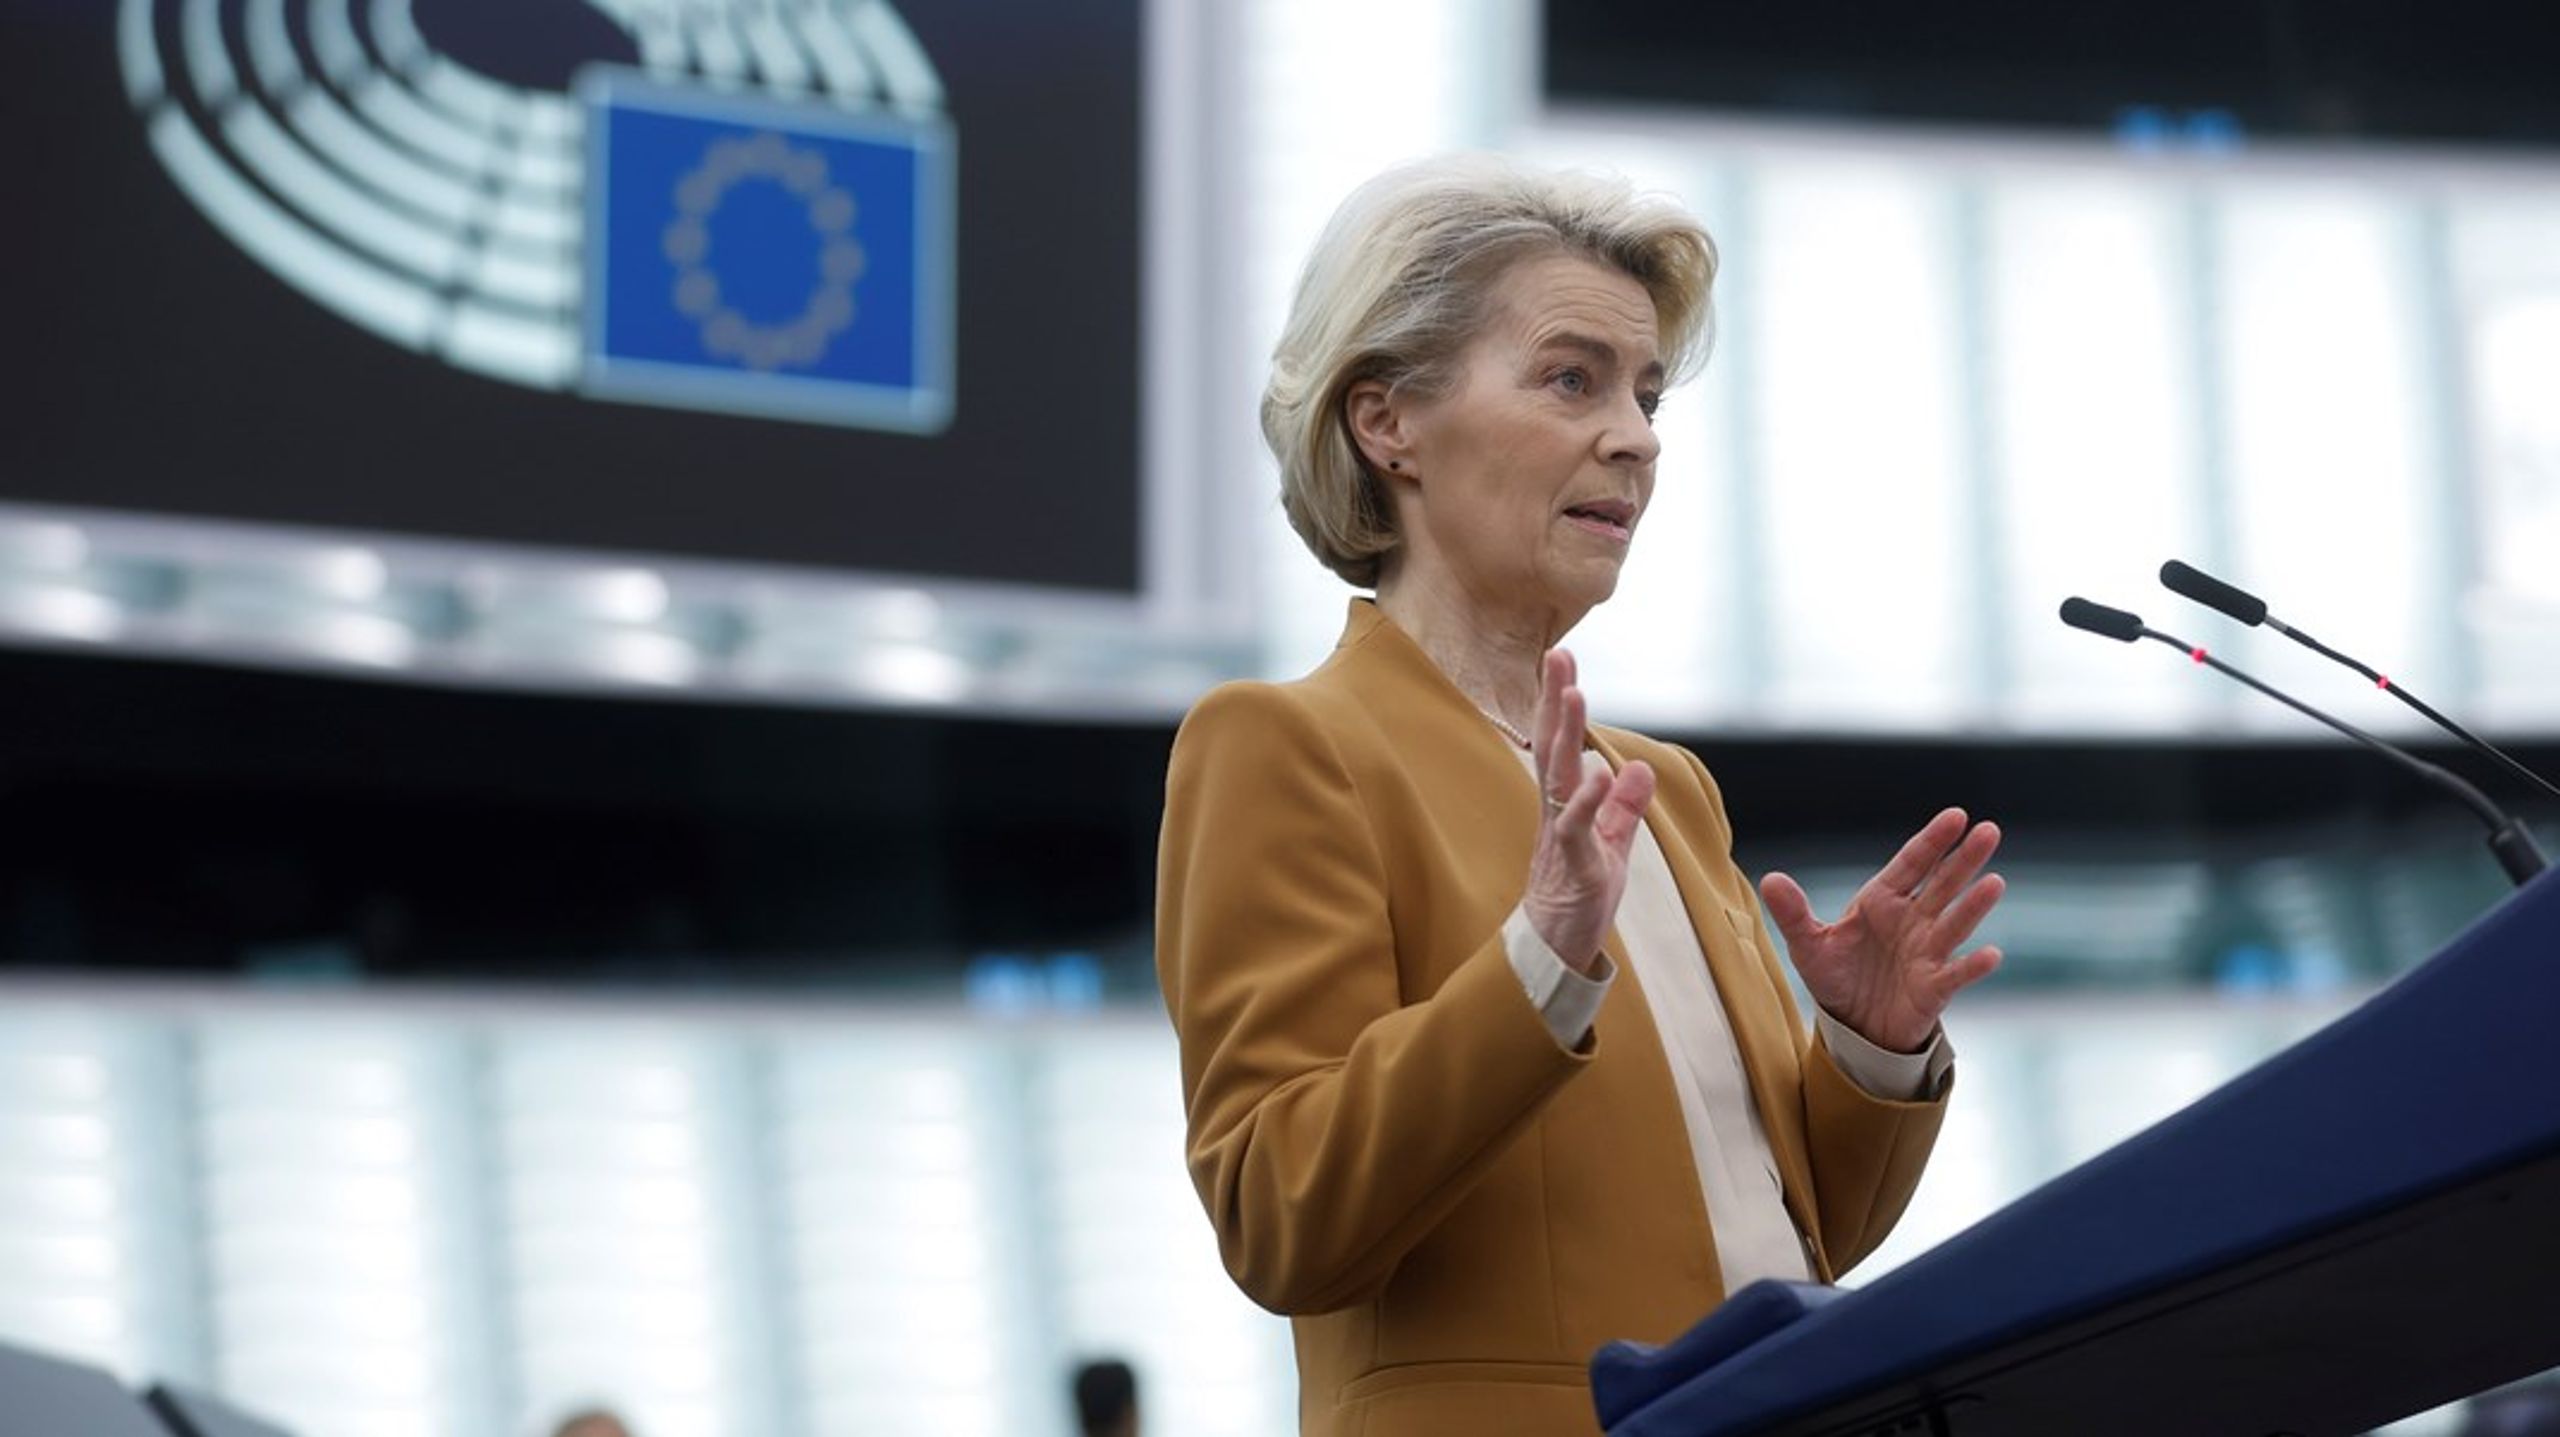 I en tale til Europaparlamentet tirsdag, varslet Ursula von der Leyen at Kommisjonen trekker sitt forslag som skulle halvere bruken av plantevernmidler i EU innen 2030.